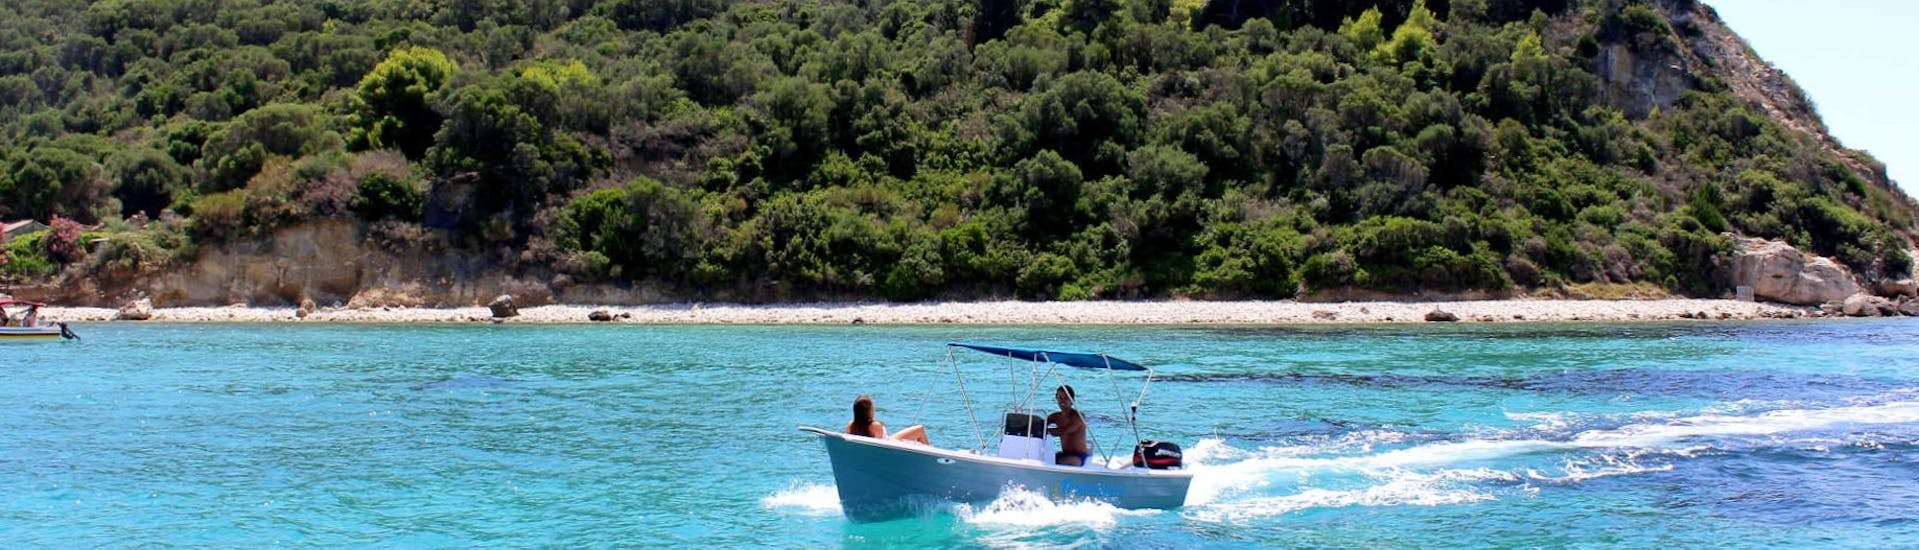 De boot die kan worden gehuurd bij de bootverhuur in Agios Sostis - Premium met Traventure Zakynthos ligt op het strand.